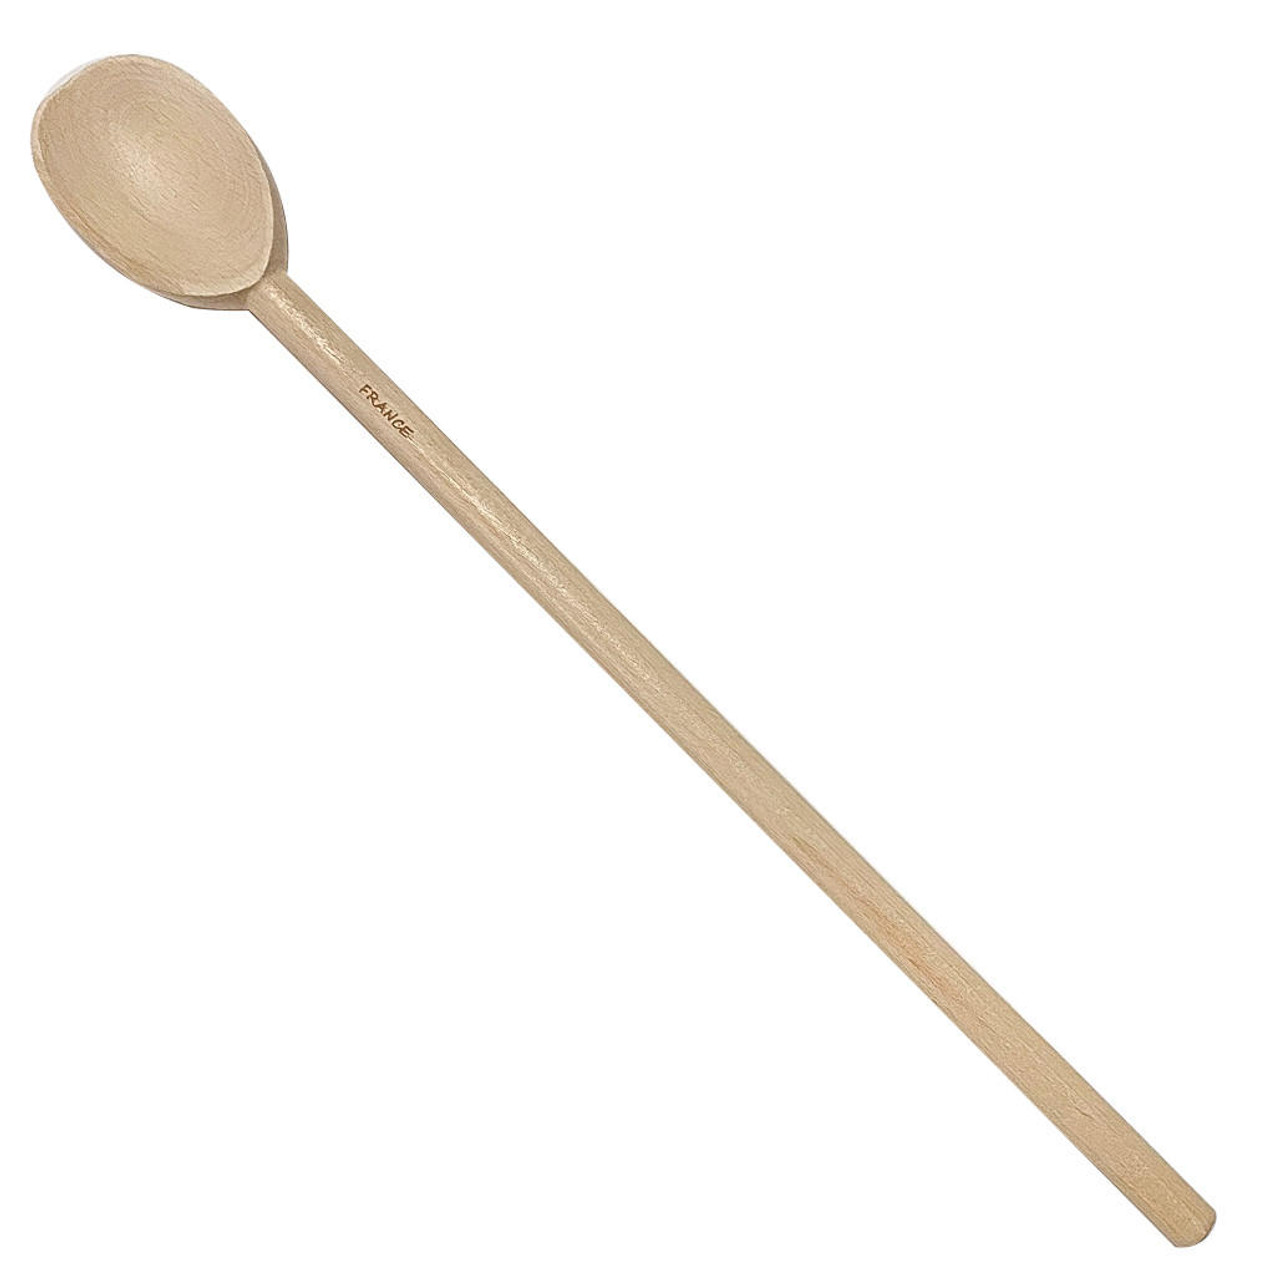 Deluxe Beechwood 18" Wooden Spoon